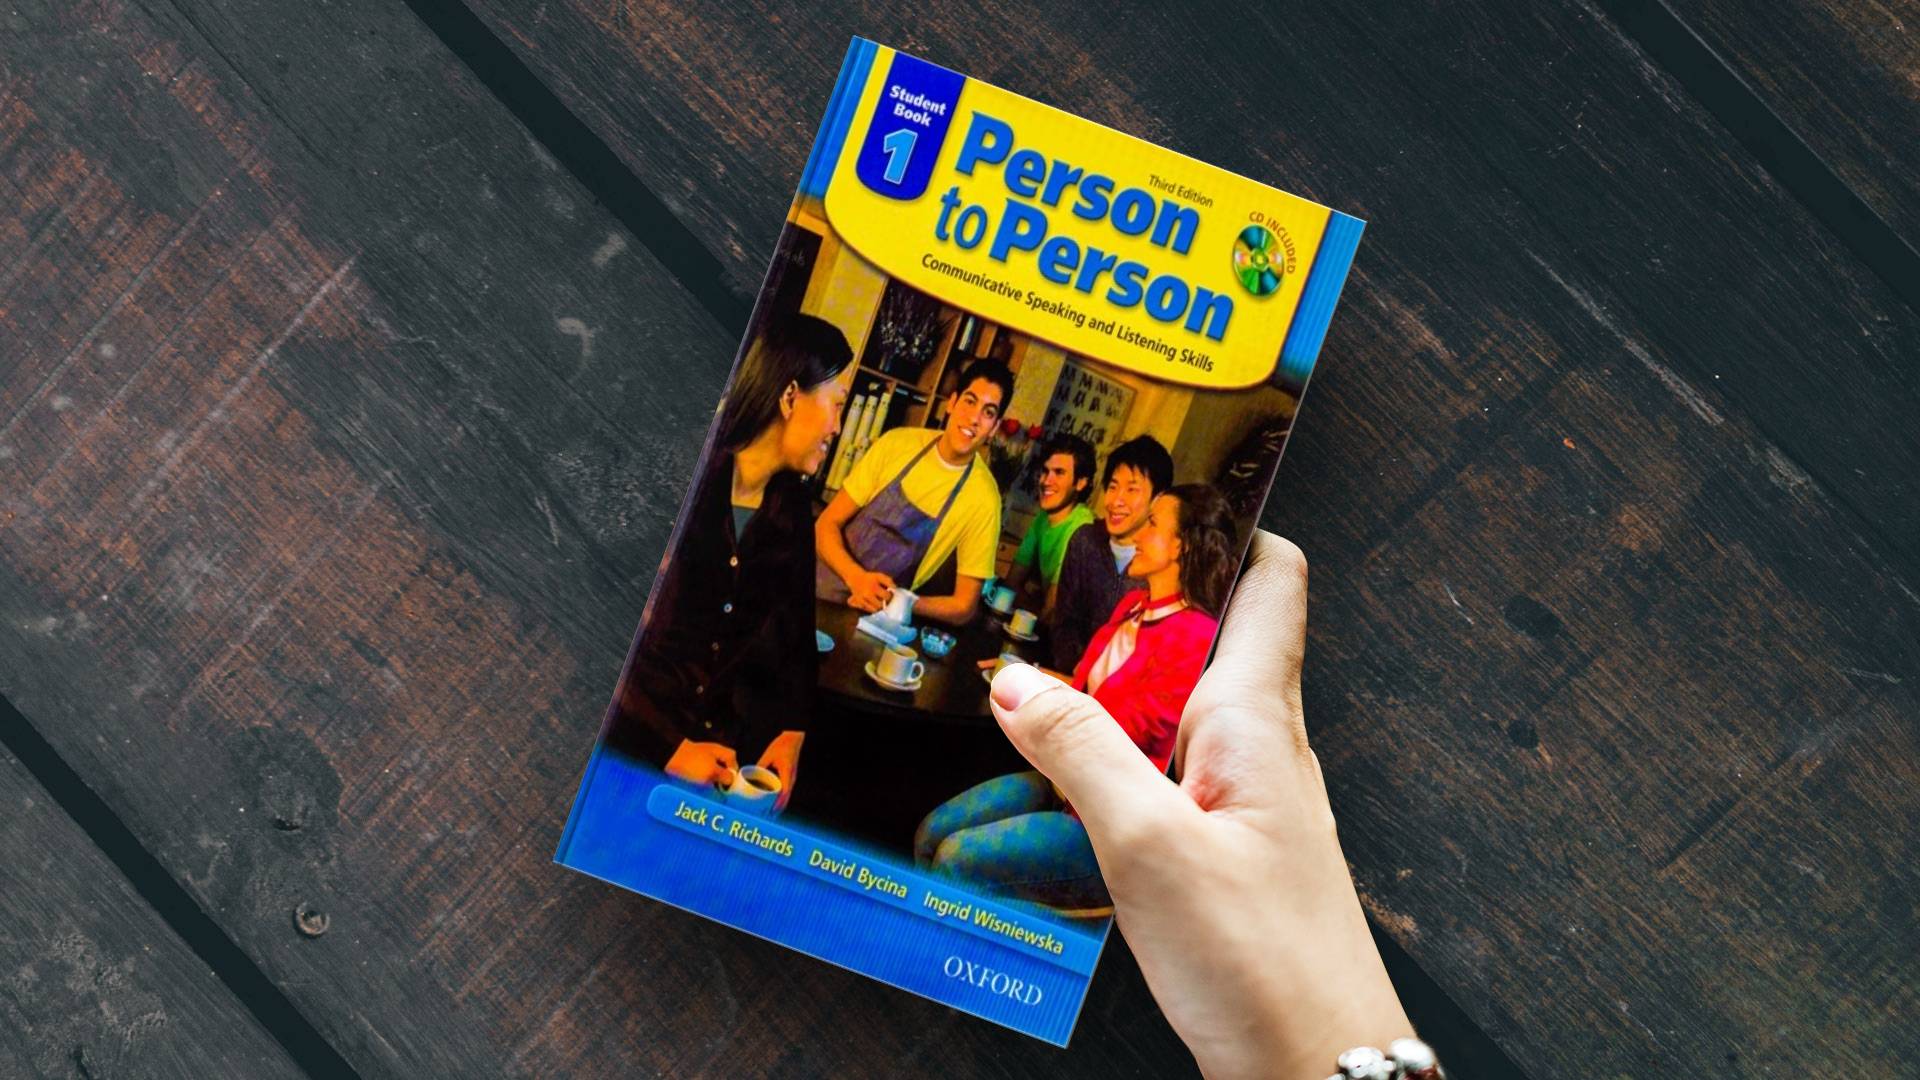 خرید کتاب زبان | فروشگاه اینترنتی کتاب زبان | Person To Person 1 Third Edition | پرسون تو پرسون یک ویرایش سوم